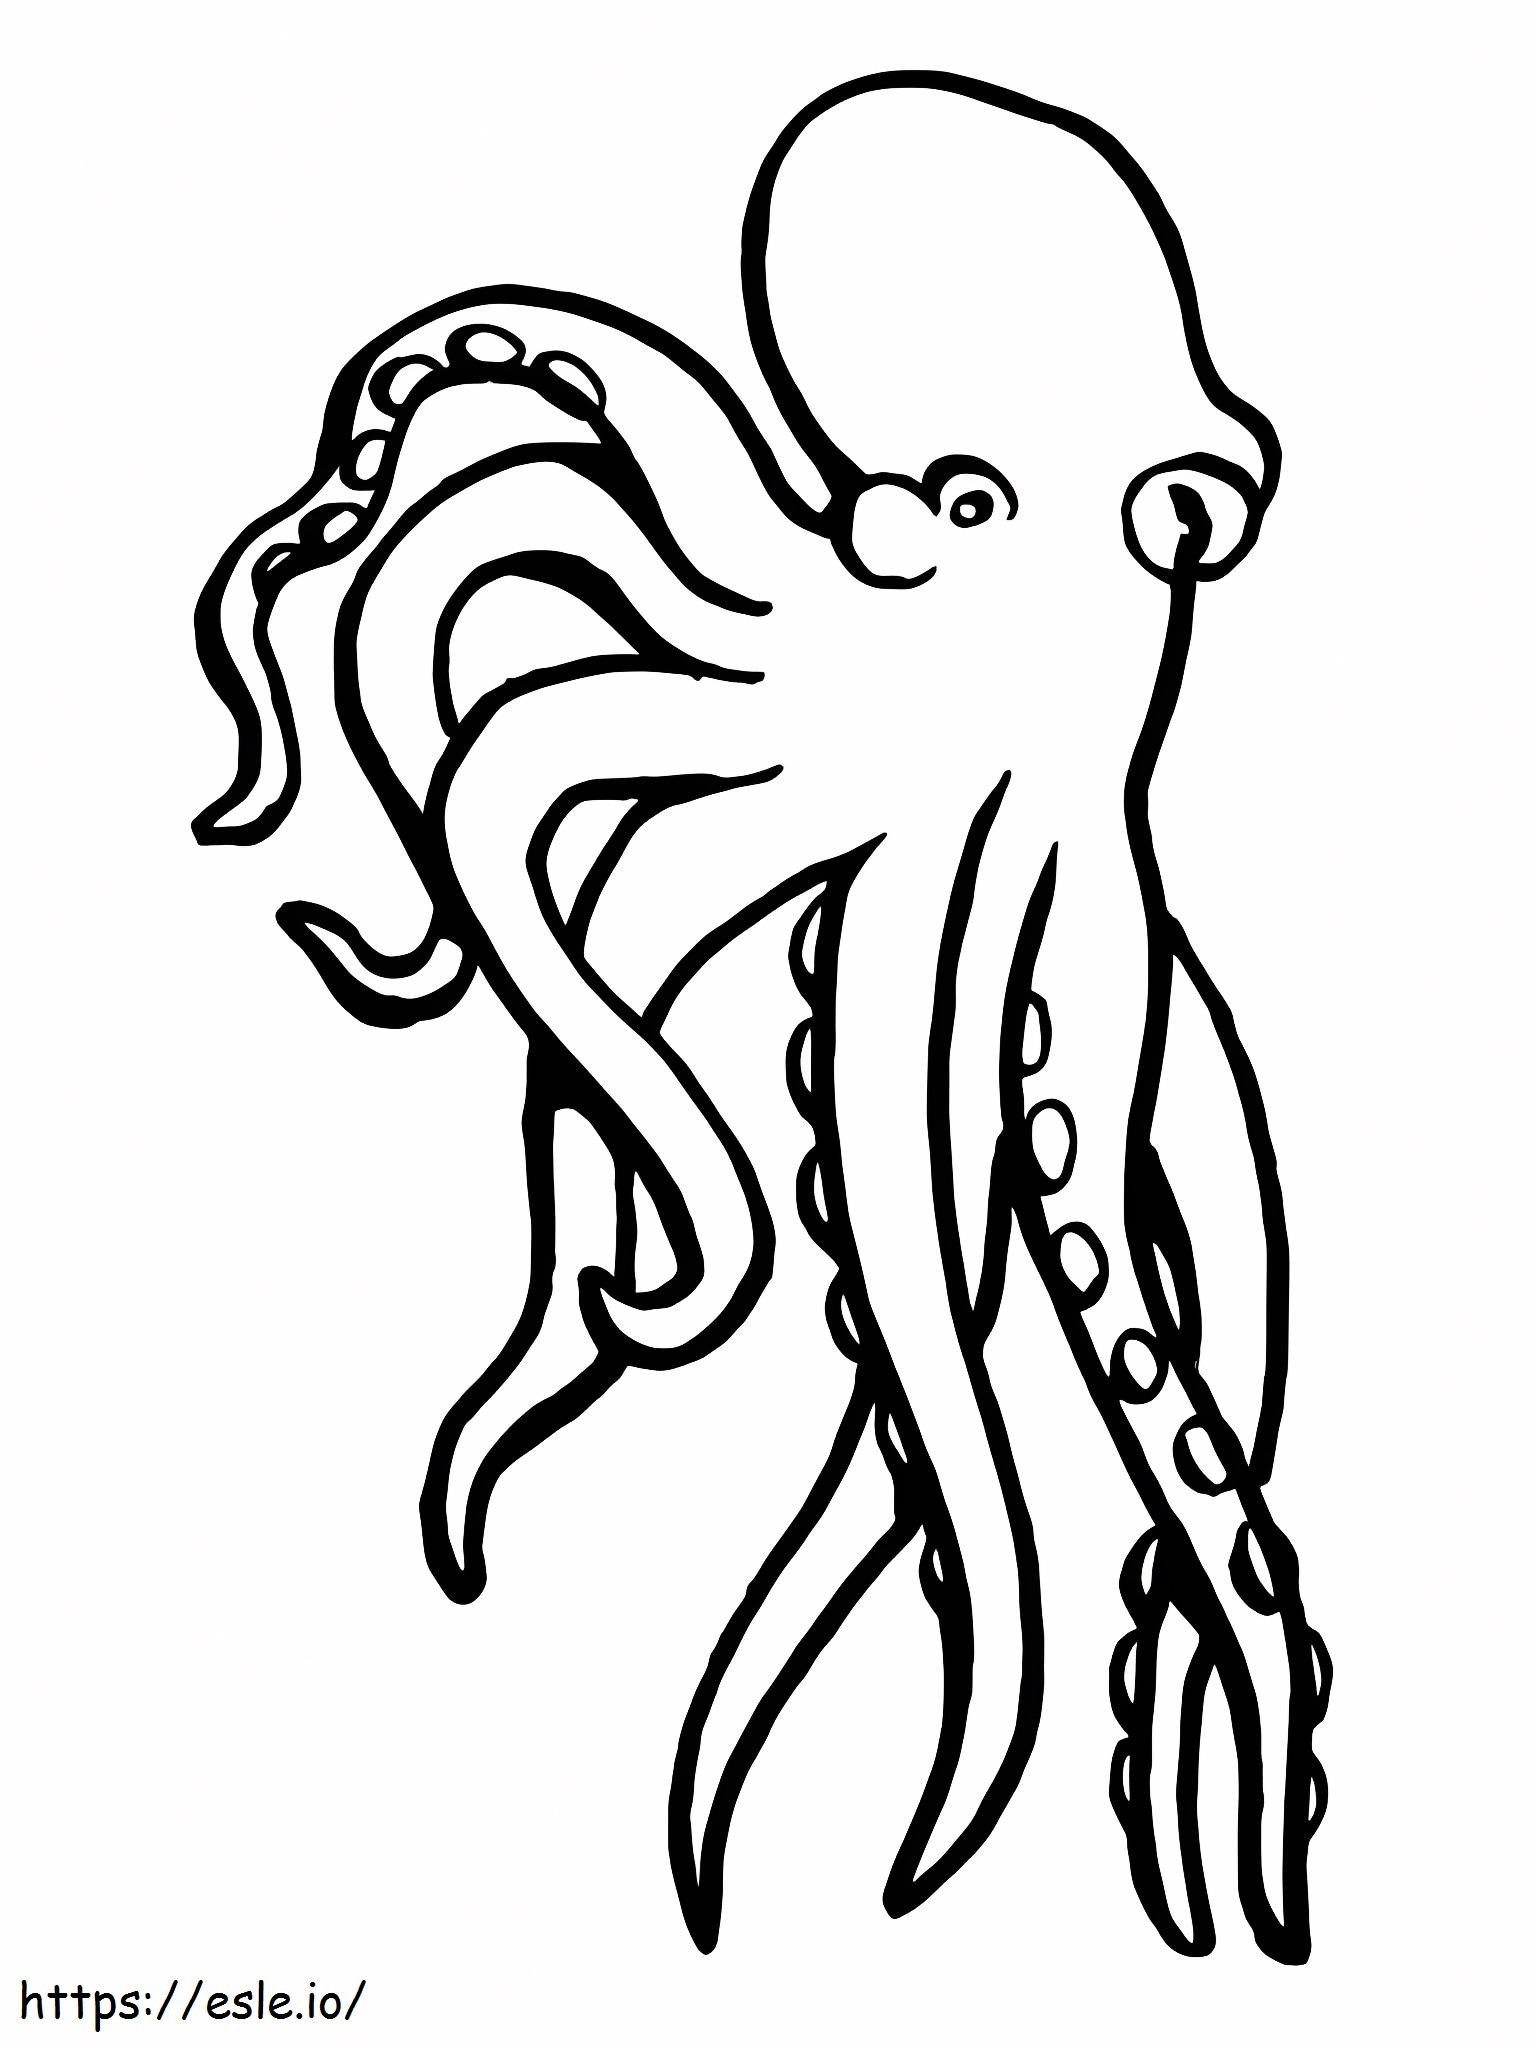 Octopus weekdier kleurplaat kleurplaat